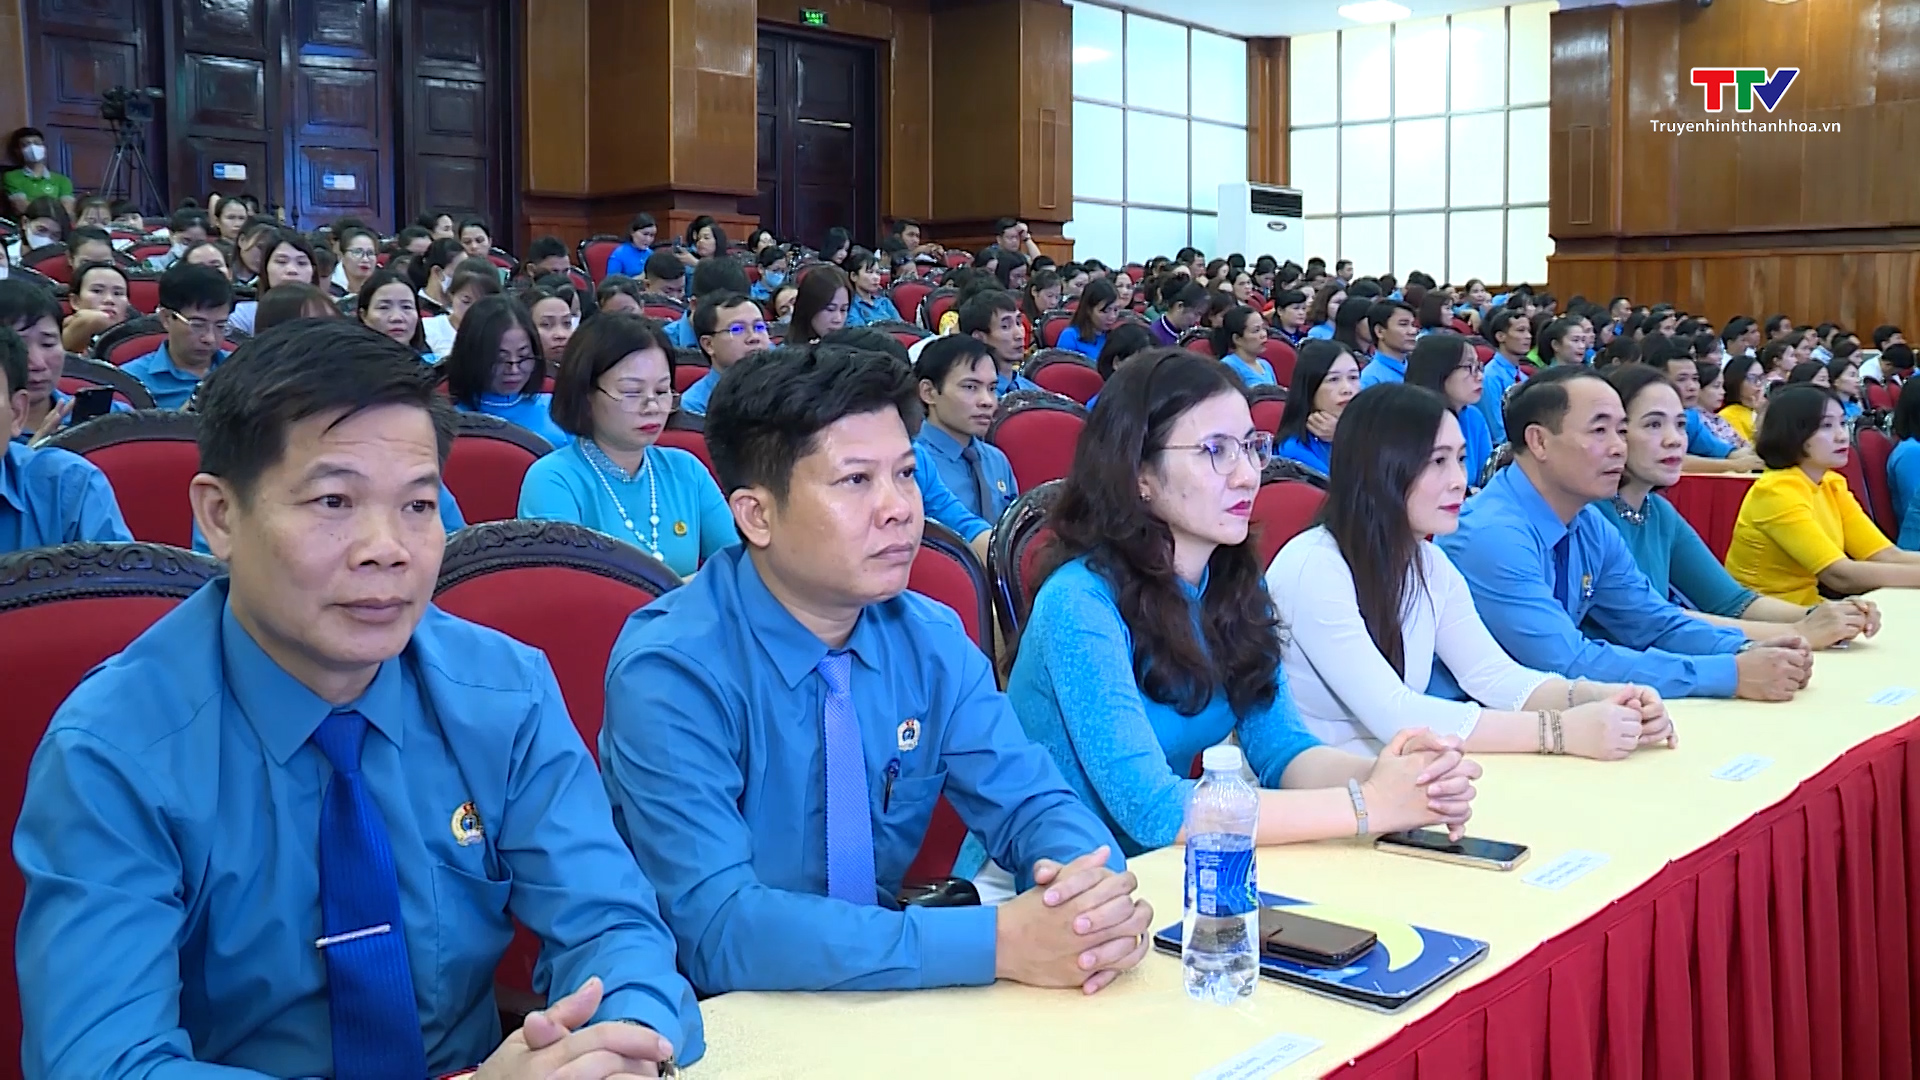 Liên đoàn lao động tỉnh Thanh Hoá tổng kết chương trình “1 triệu sáng kiến - nỗ lực vượt khó, sáng tạo, quyết tâm chiến thắng đại dịch COVID-19” - Ảnh 5.